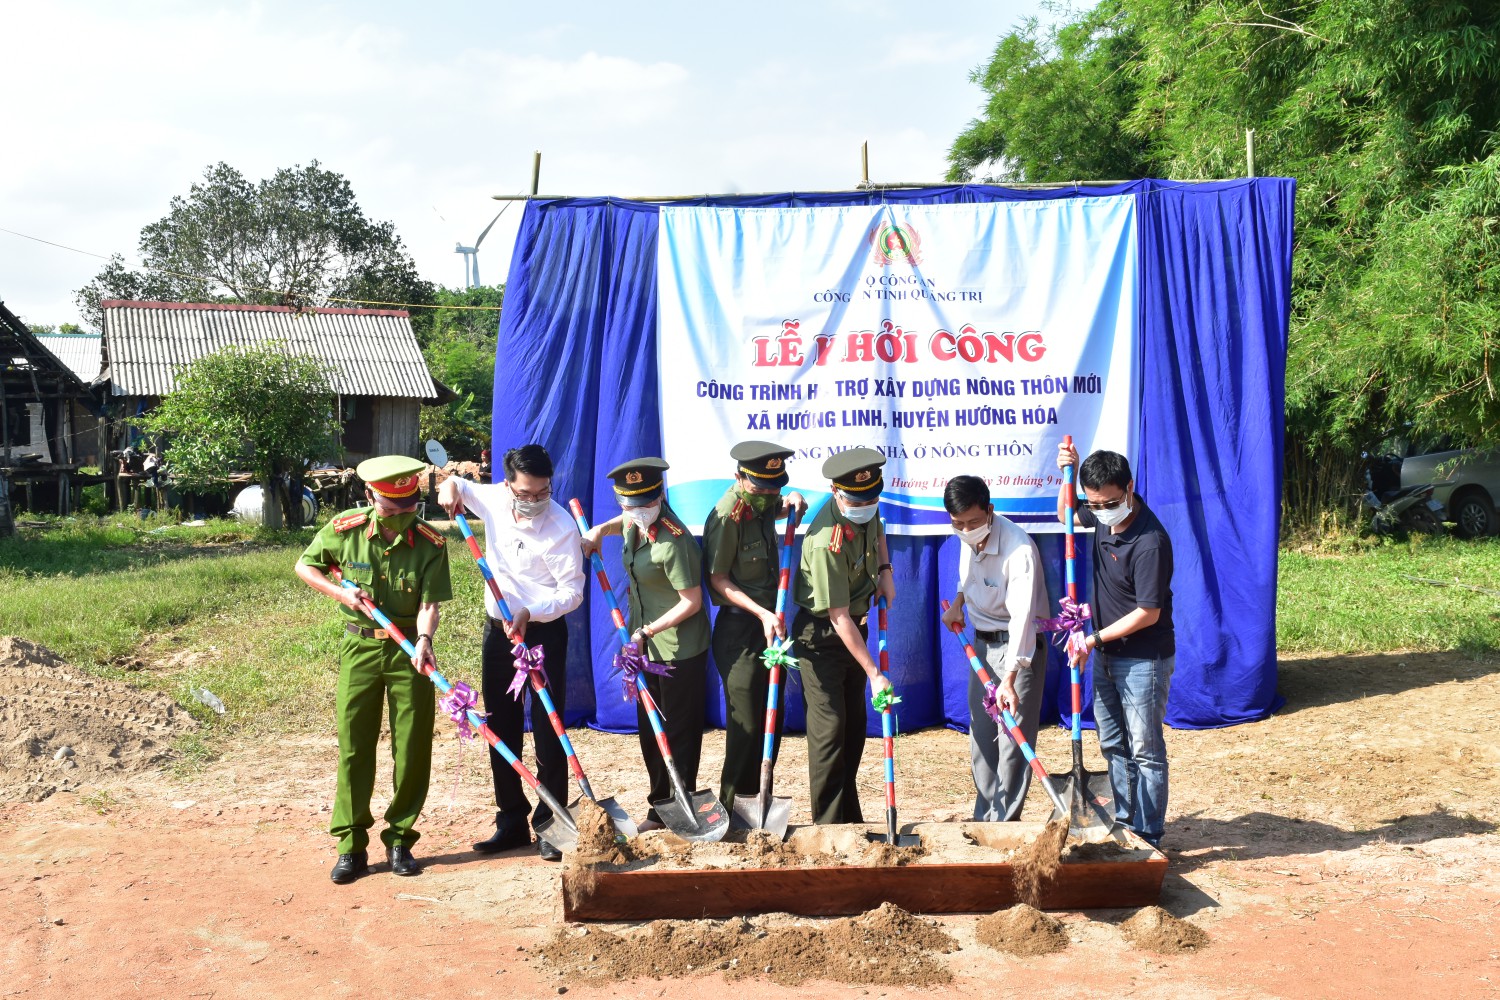 Lễ khởi công hỗ trợ xây dựng công trình nhà ở cho người dân ở xã Hướng Linh